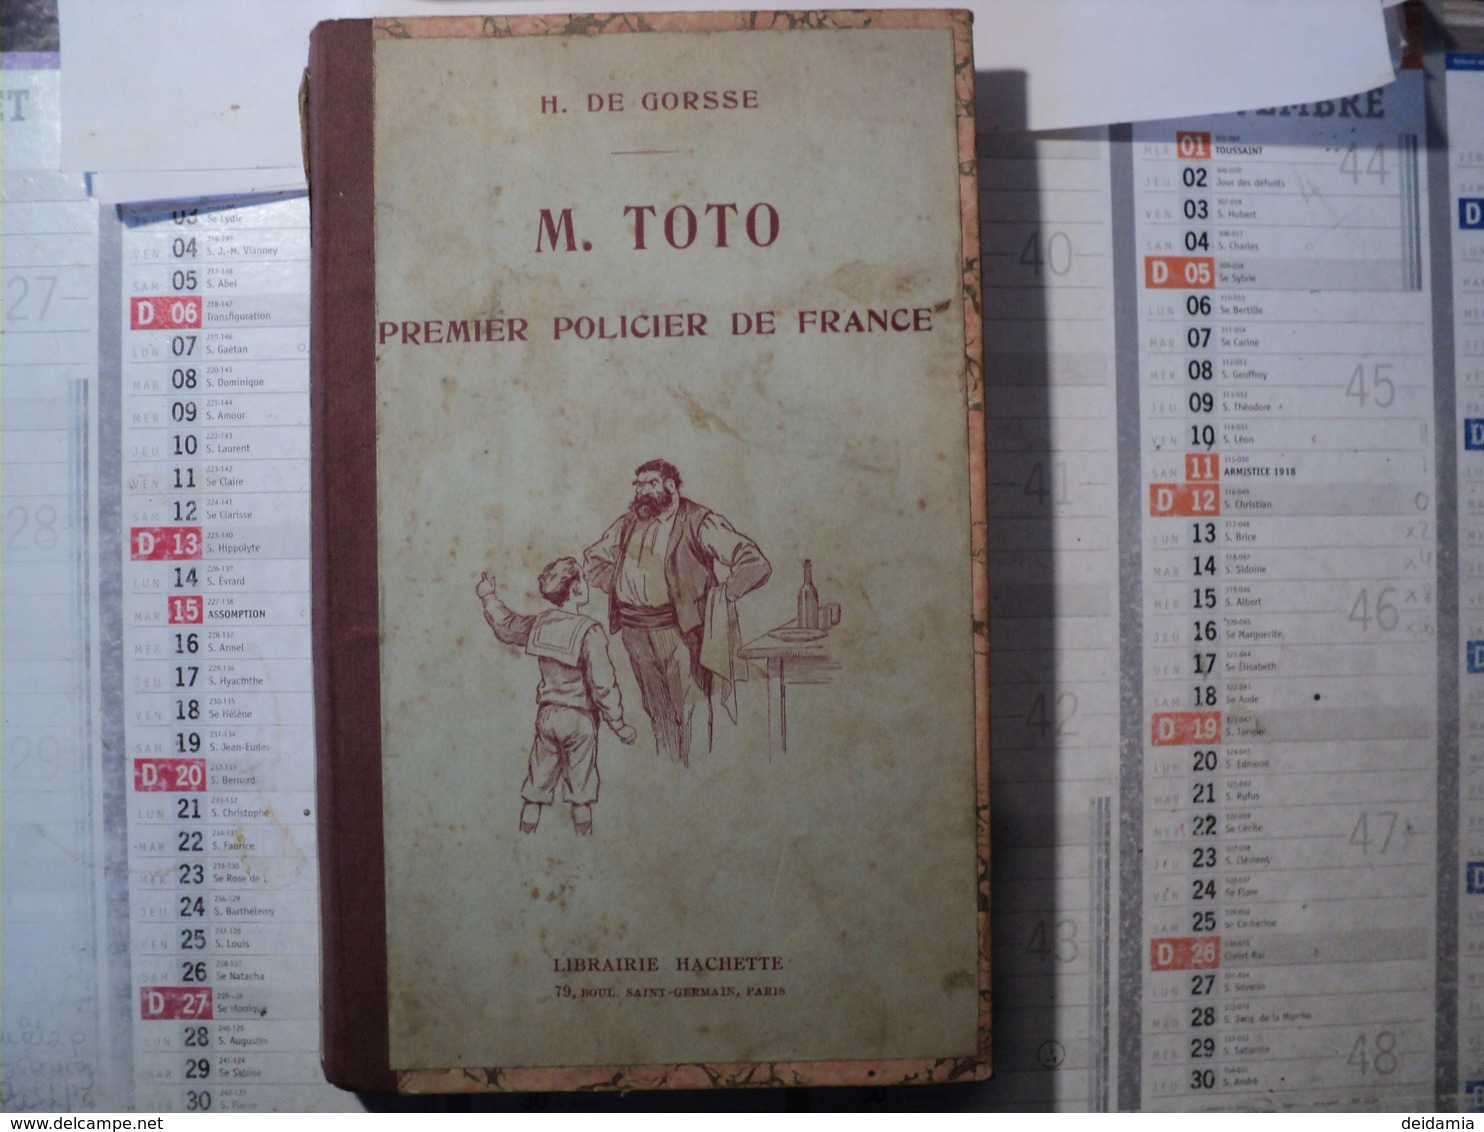 M. TOTO PREMIER POLICIER DE FRANCE. 1921. ILLSTRATIONS DE CLERICEY. PAR H. DE GORSSE LIBRAIRIE HACHETTE - 1901-1940